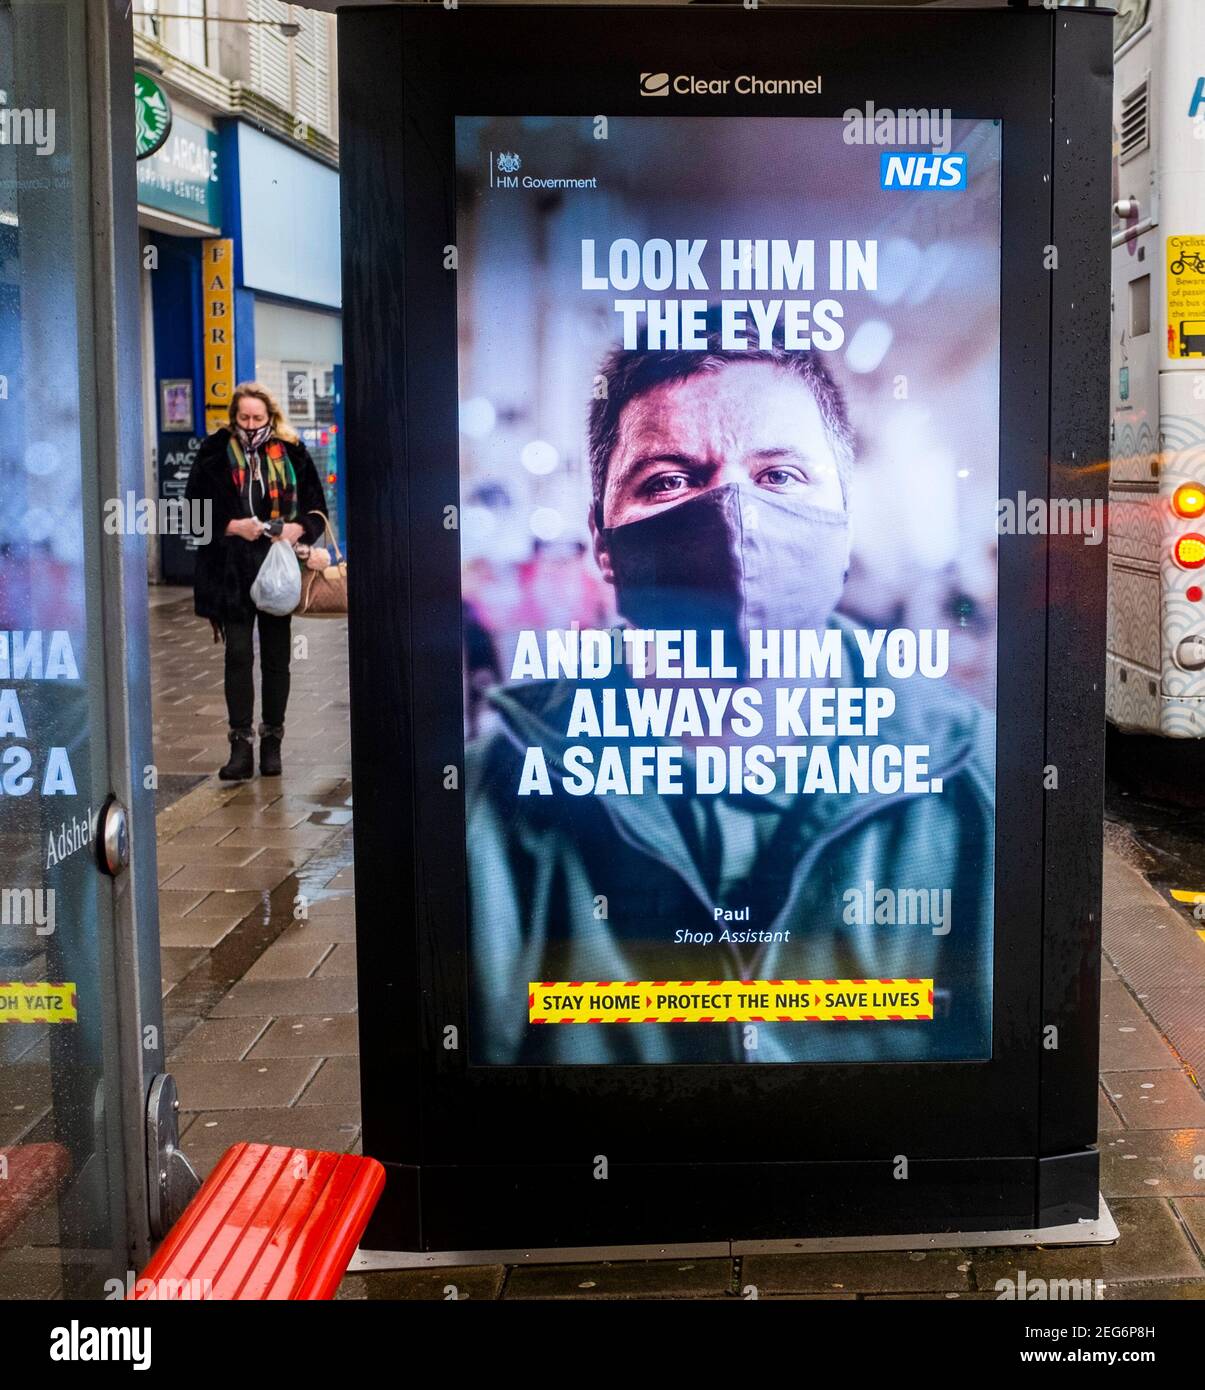 Gobierno británico NHS coronavirus COVID-19 mirarlos en los ojos Cartel de la campaña de salud en una parada de autobús en Brighton, Reino Unido Foto de stock